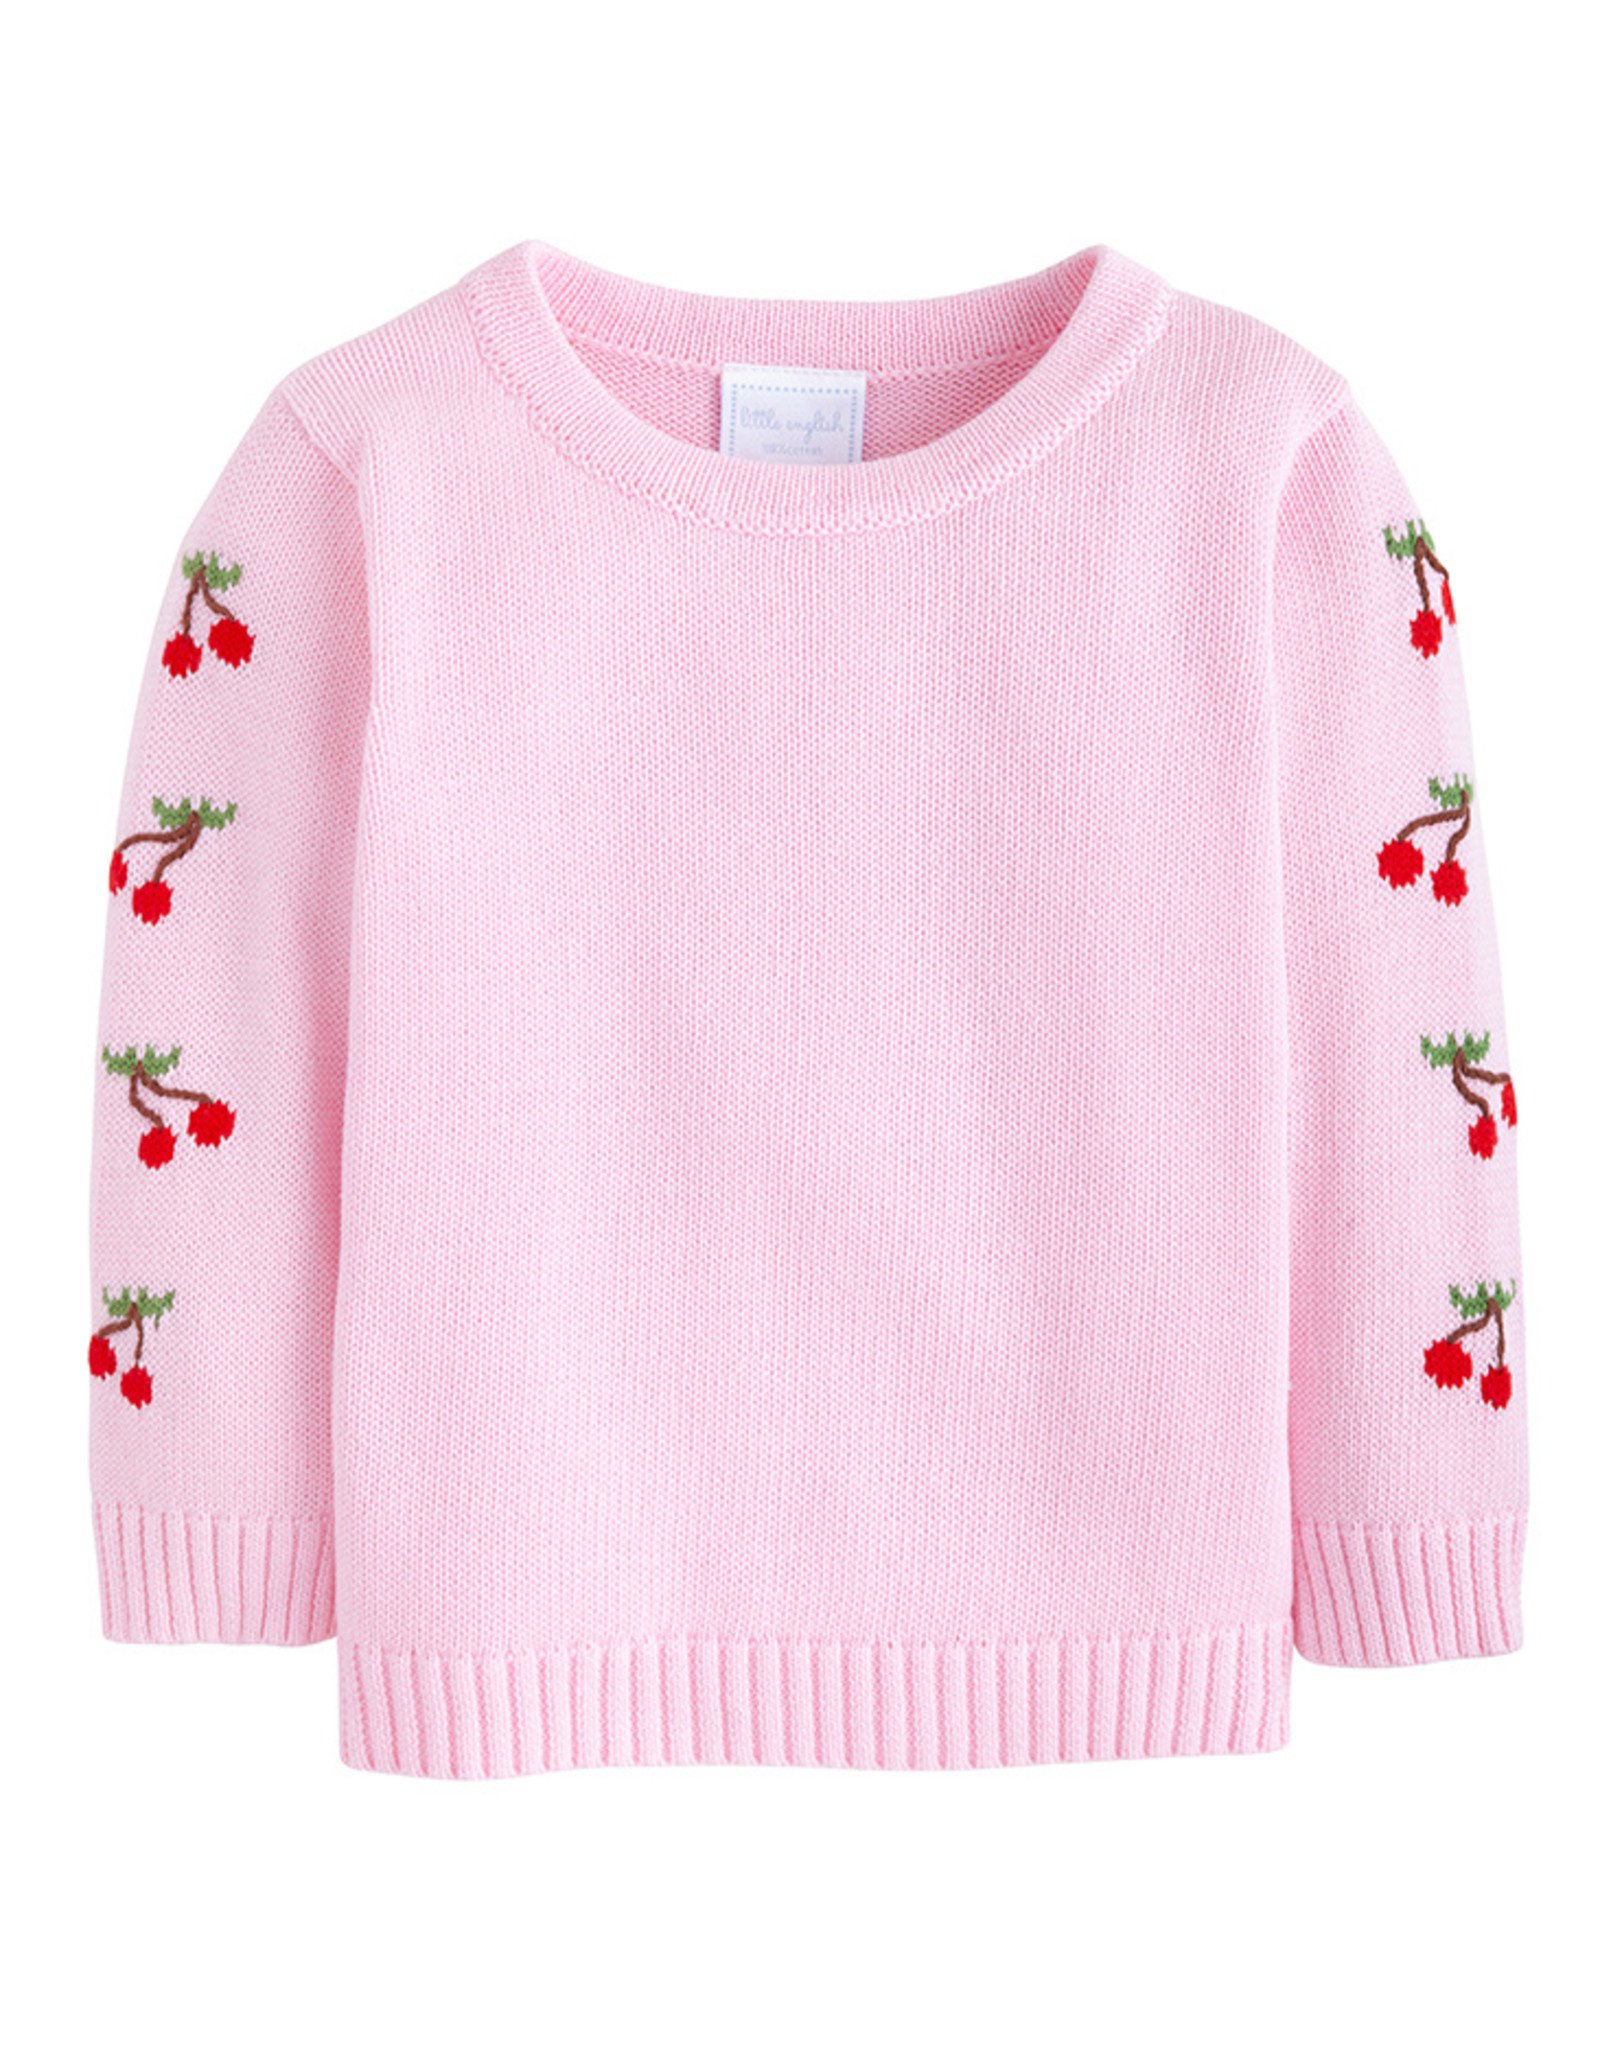 Little English Cherry Fun Intarsia Sweater